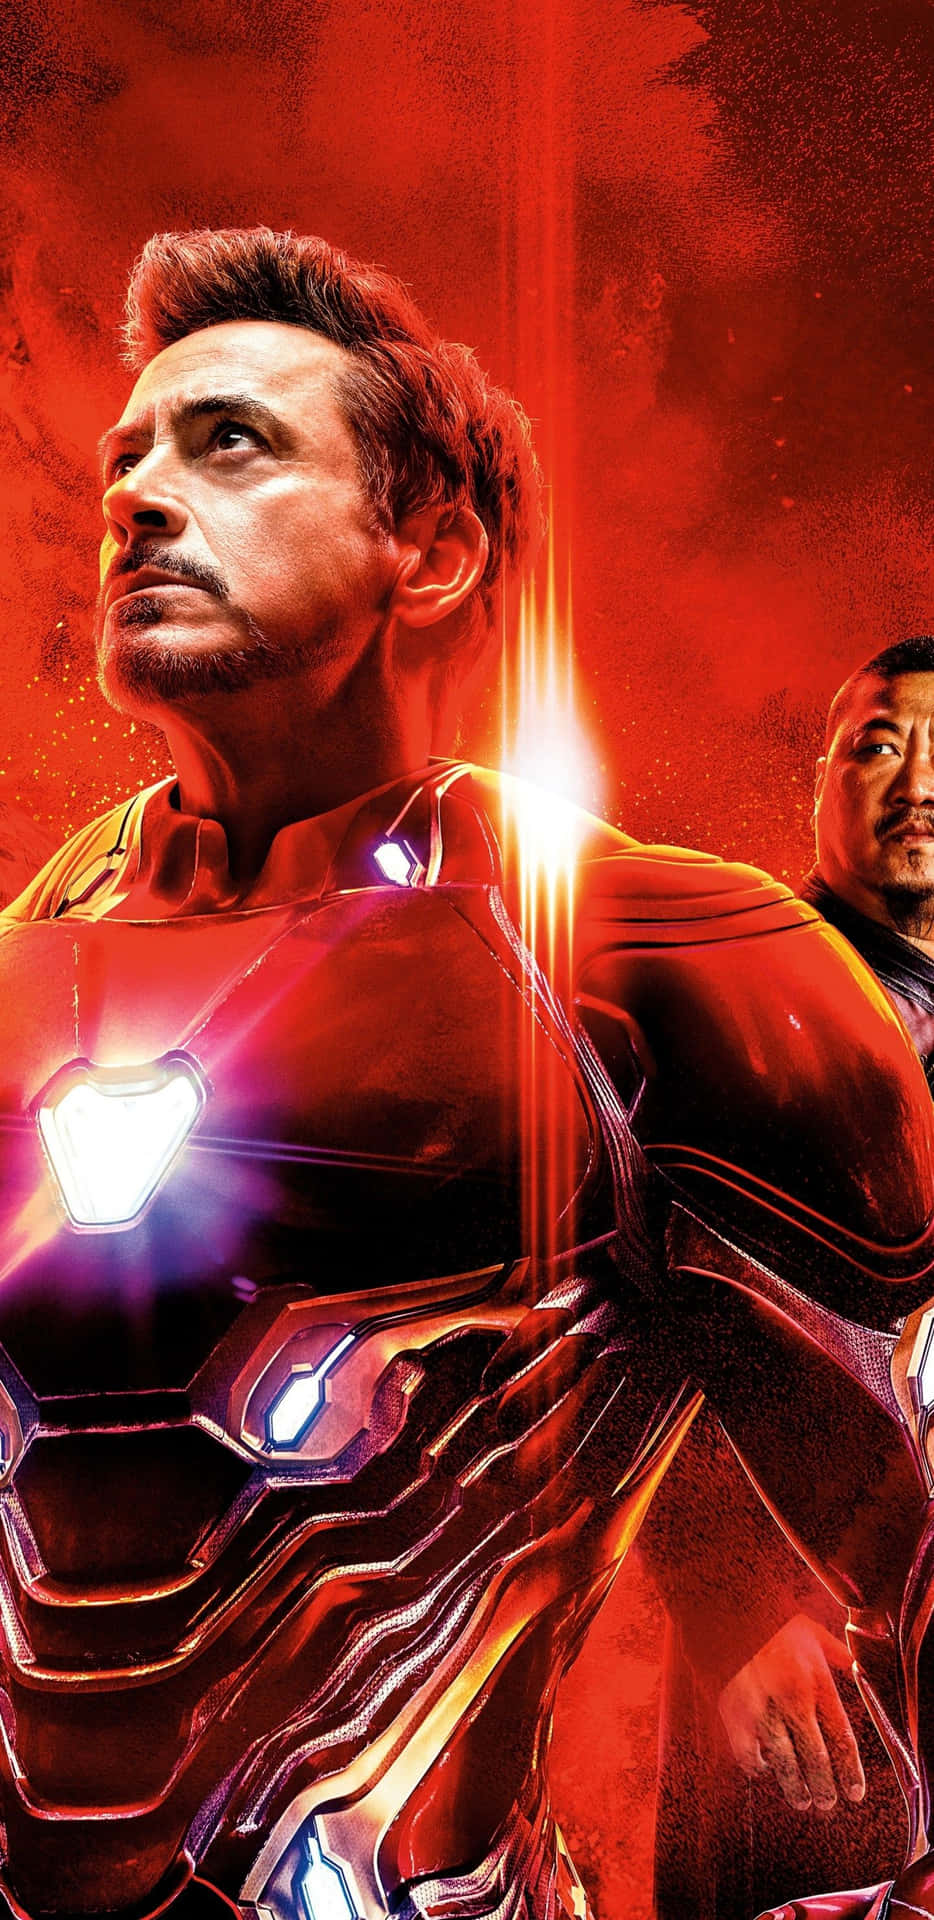 Avengers Iron Man Actor Robert Downey Jr Wallpaper